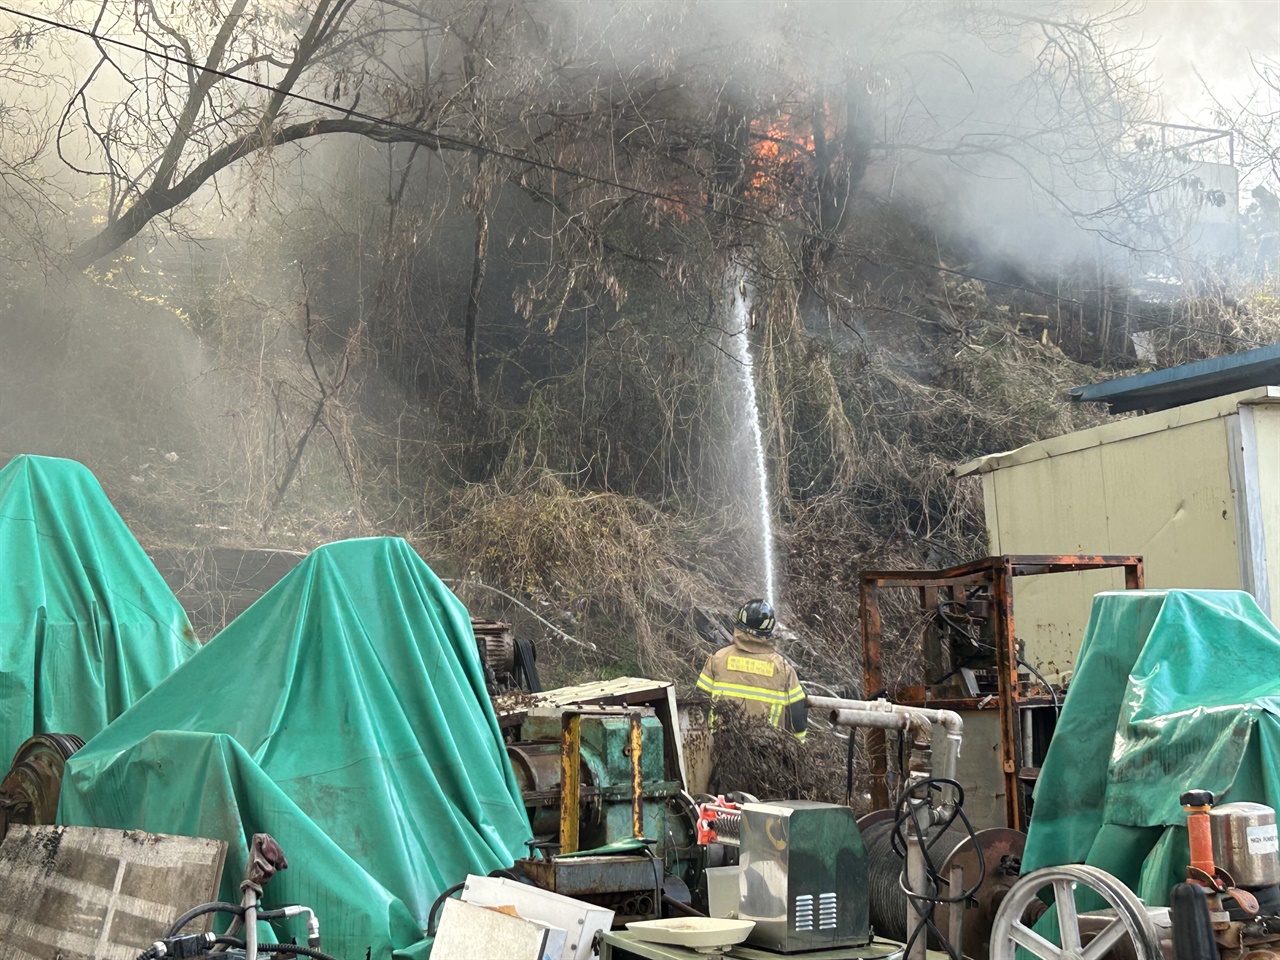 인근 공장으로 불이 번질 위험에 대비해 소방관들은 주변에 물을 뿌리고 있다.